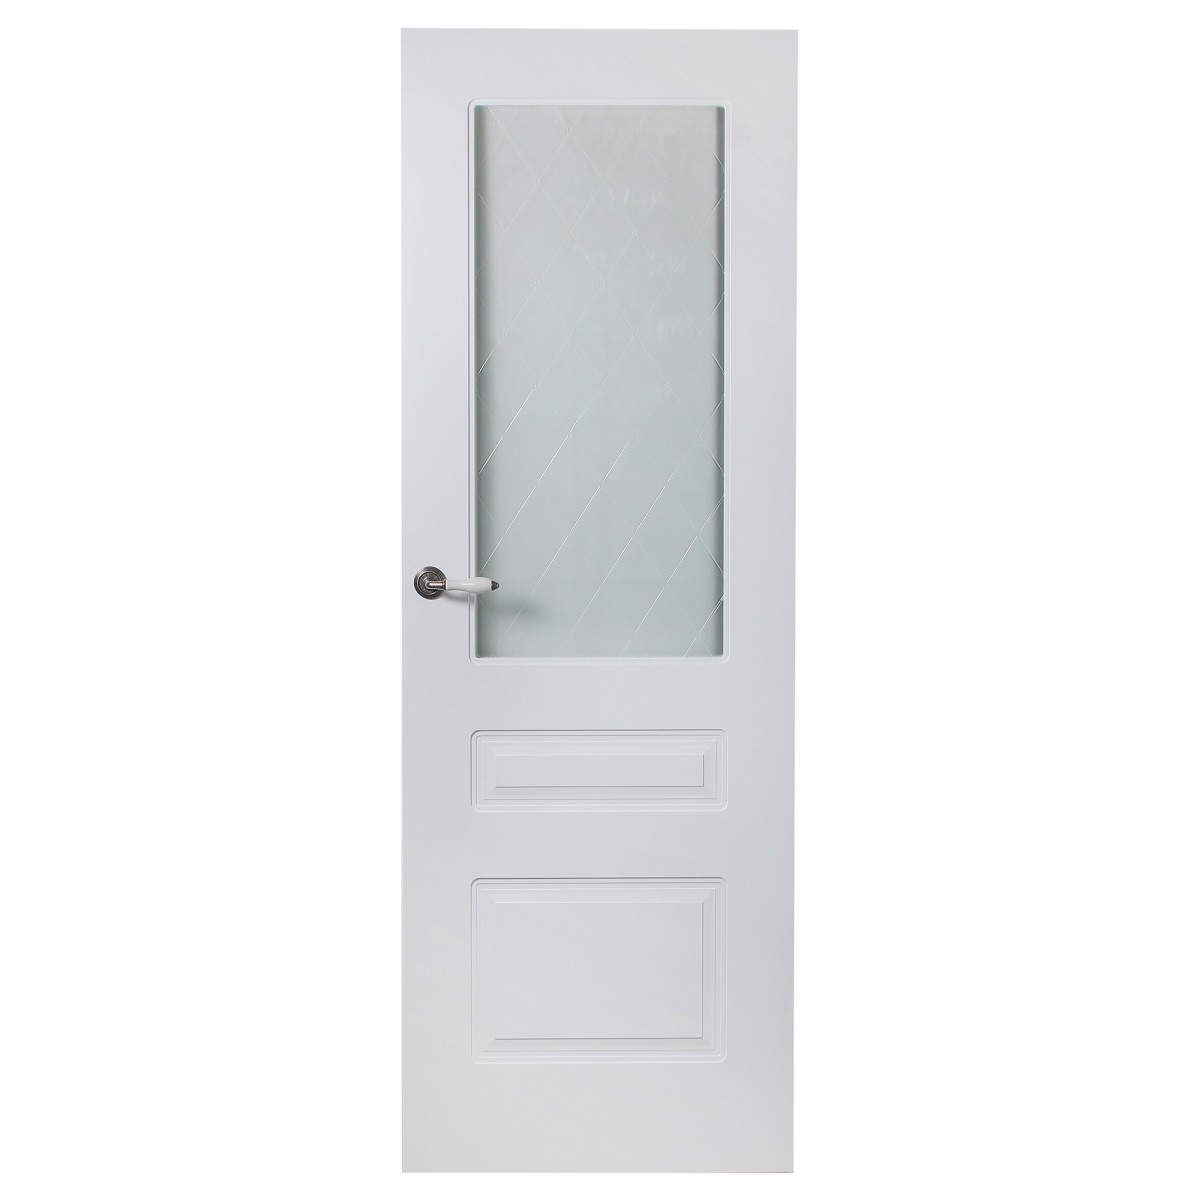 Дверь межкомнатная остеклённая Роялти 80x200 см цвет белый